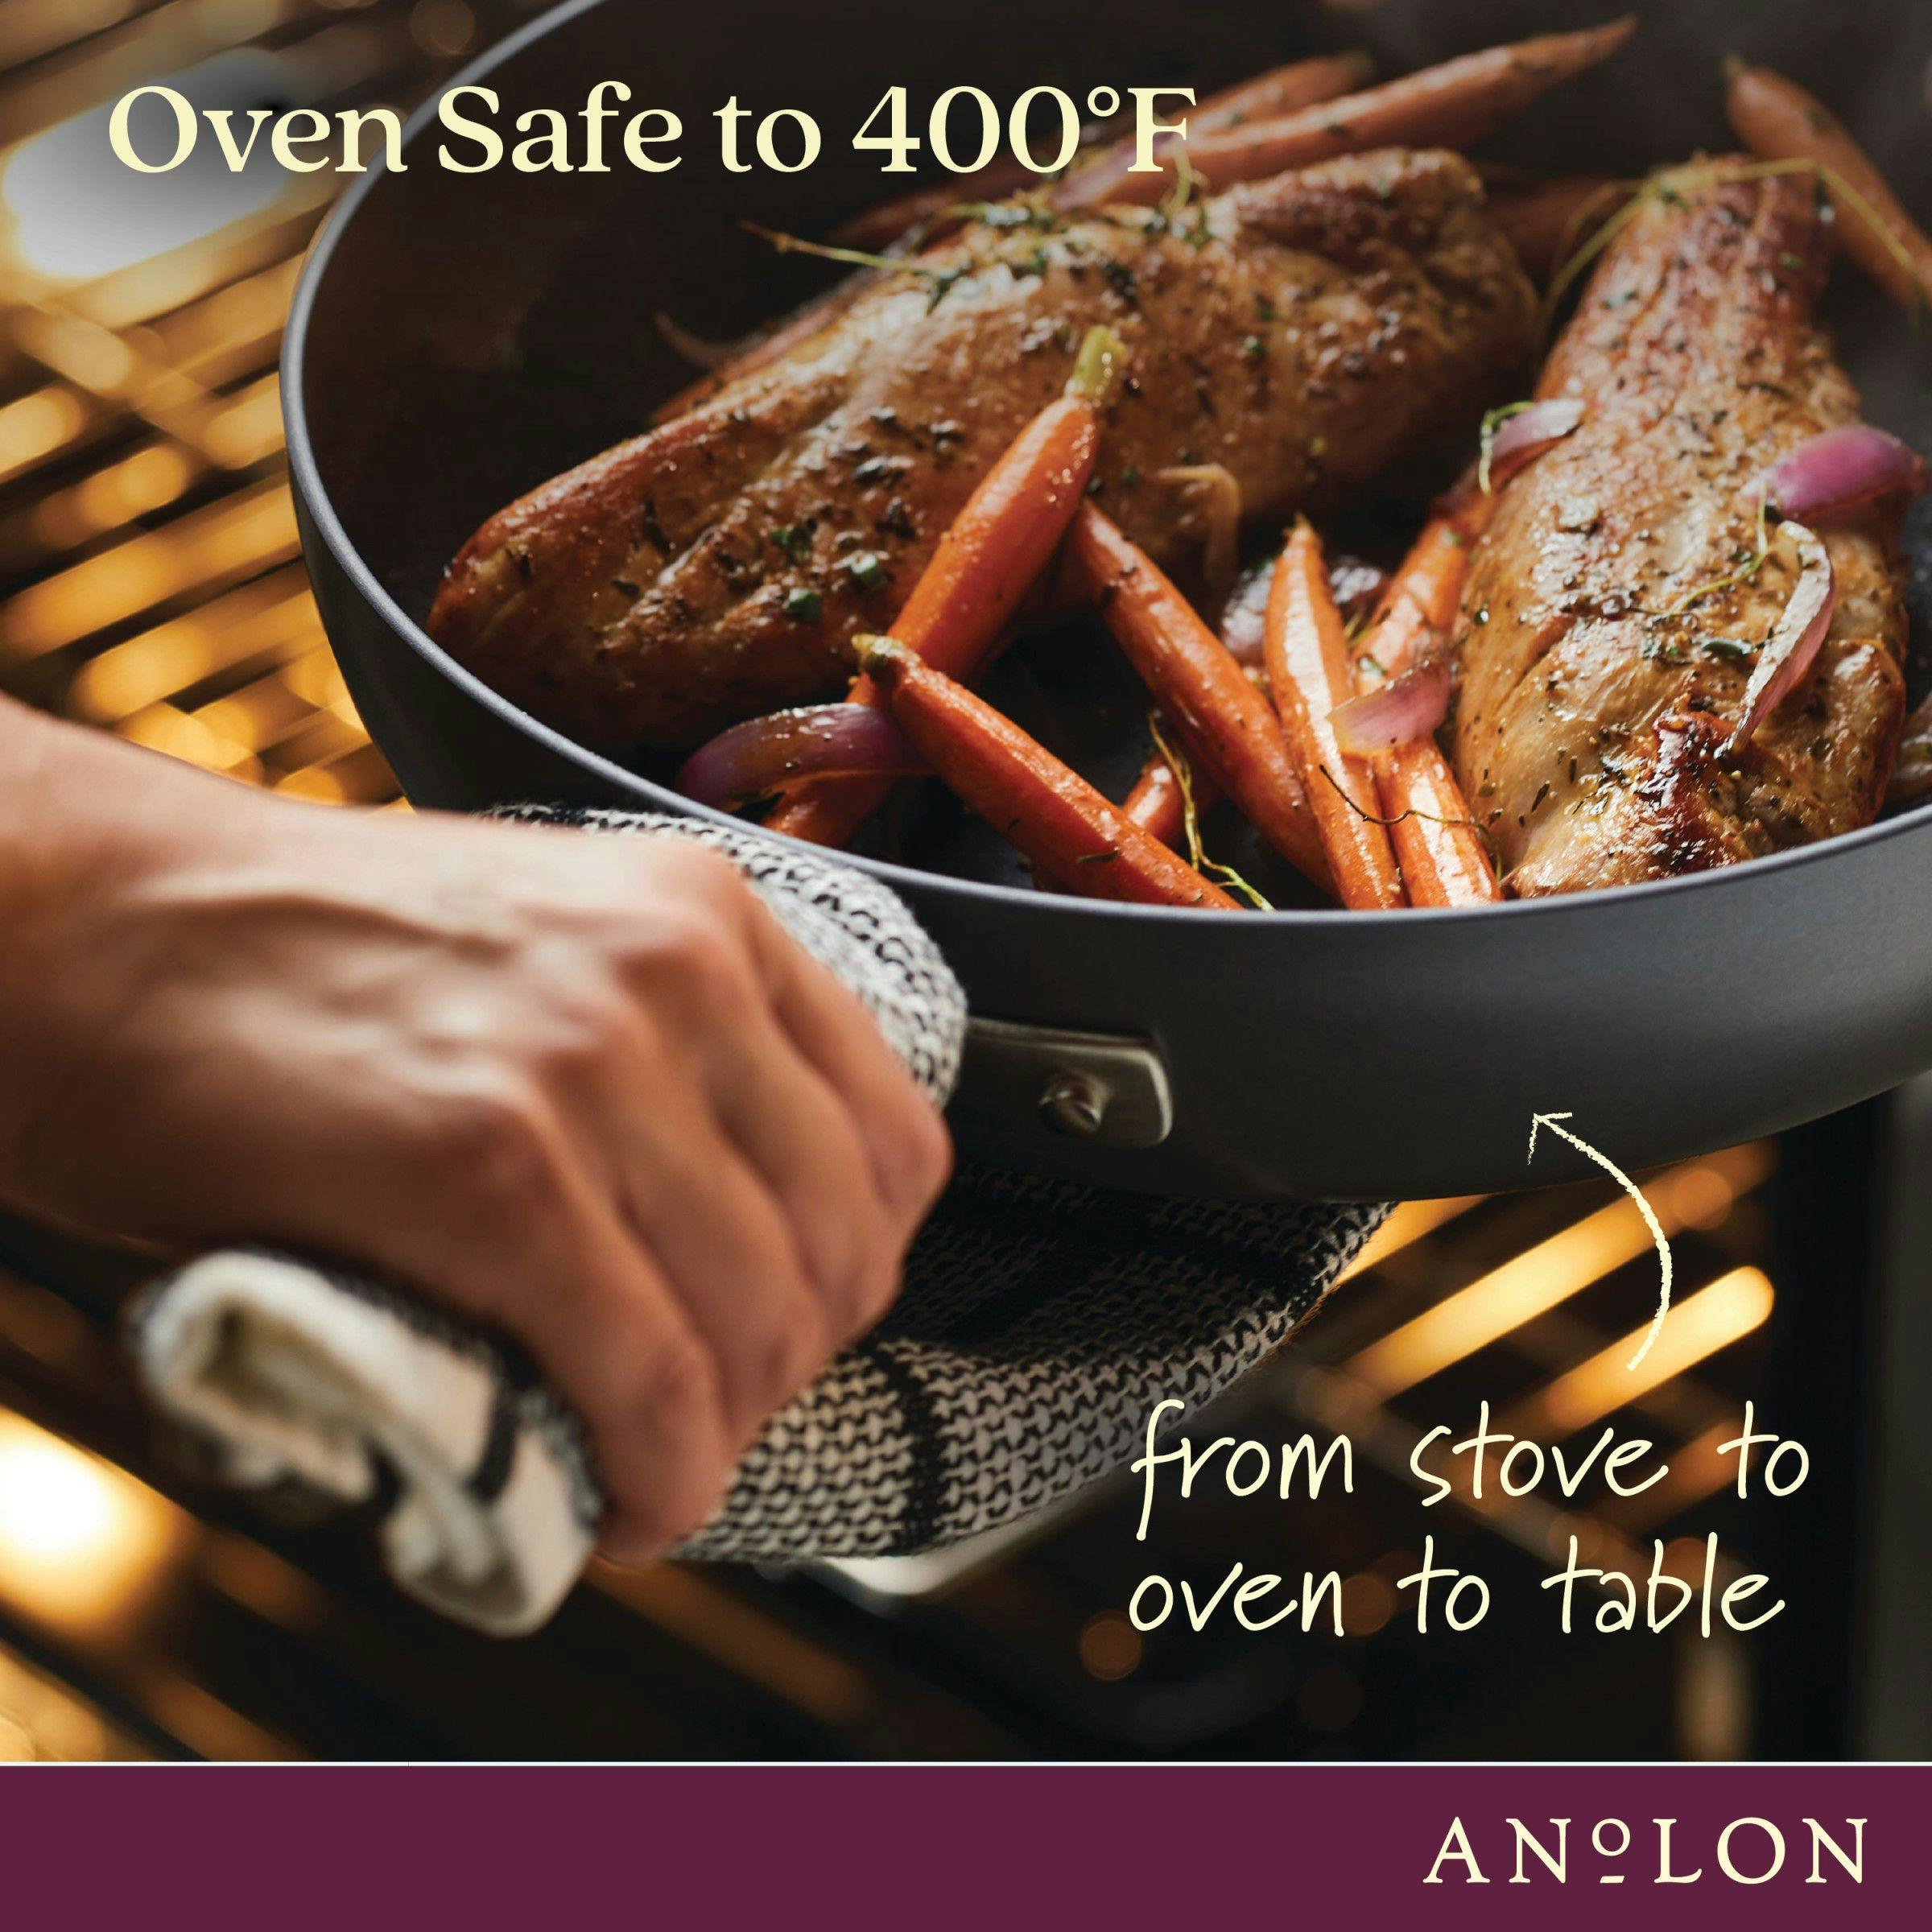 Anolon Achieve Hard Anodized Nonstick Cookware Pots and Pans Set, 9 Piece - Cream